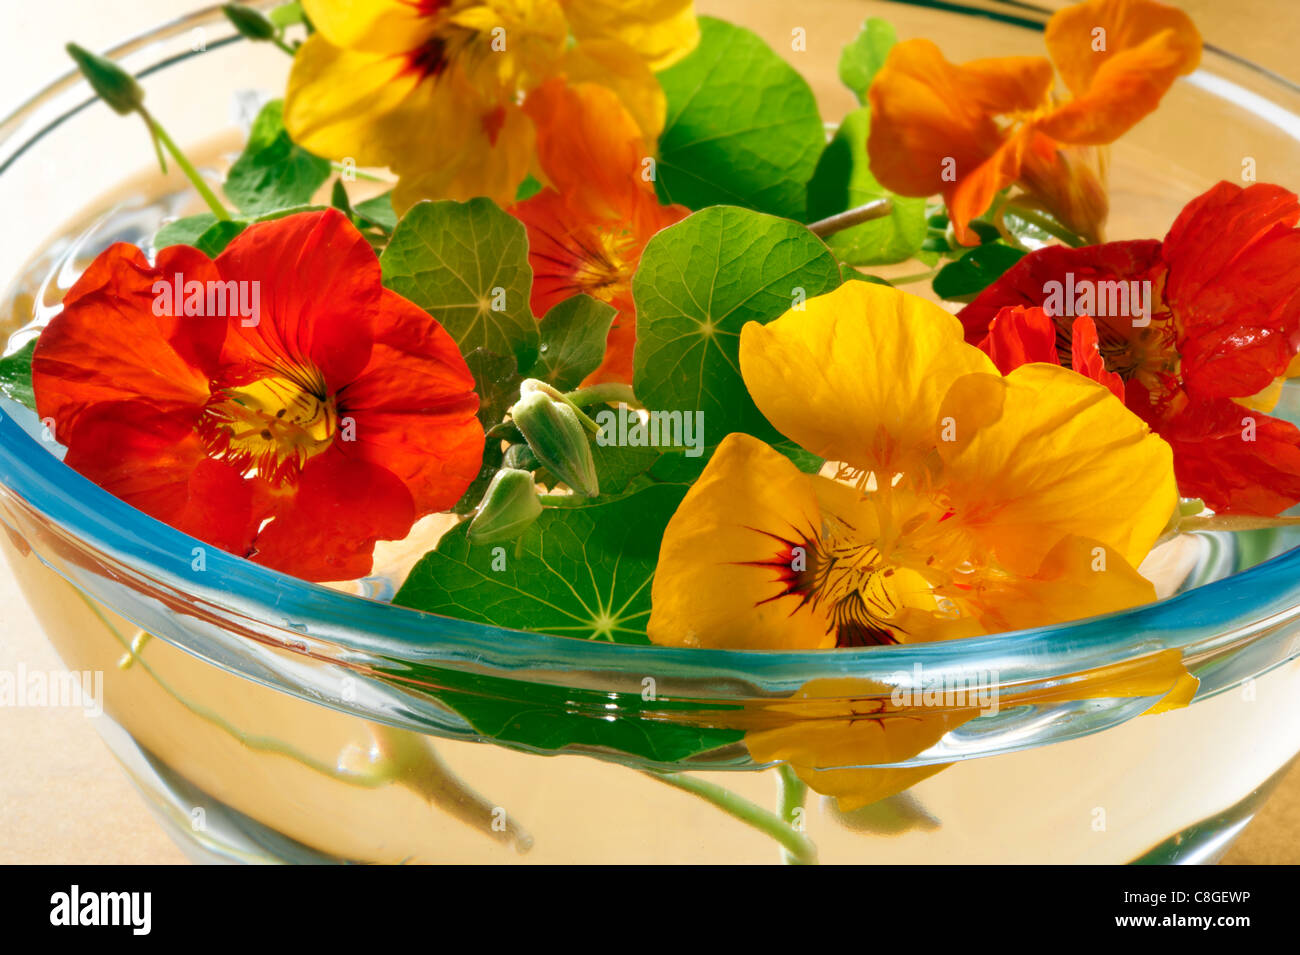 La floraison des fleurs de capucines fraîches Banque D'Images